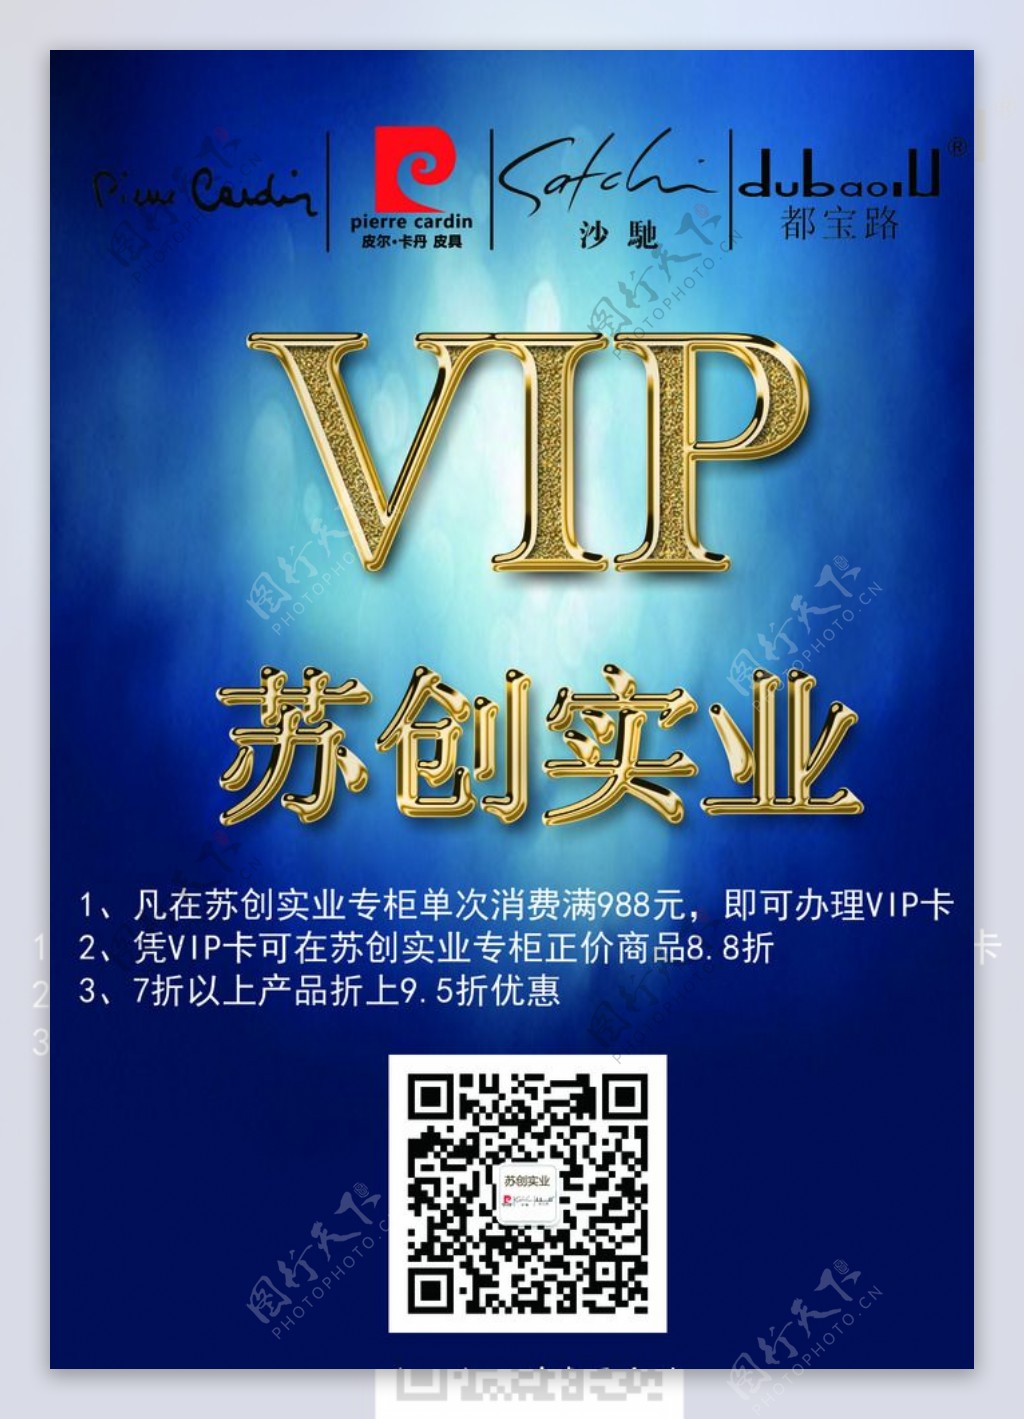 公司VIP招募会员二维码图片